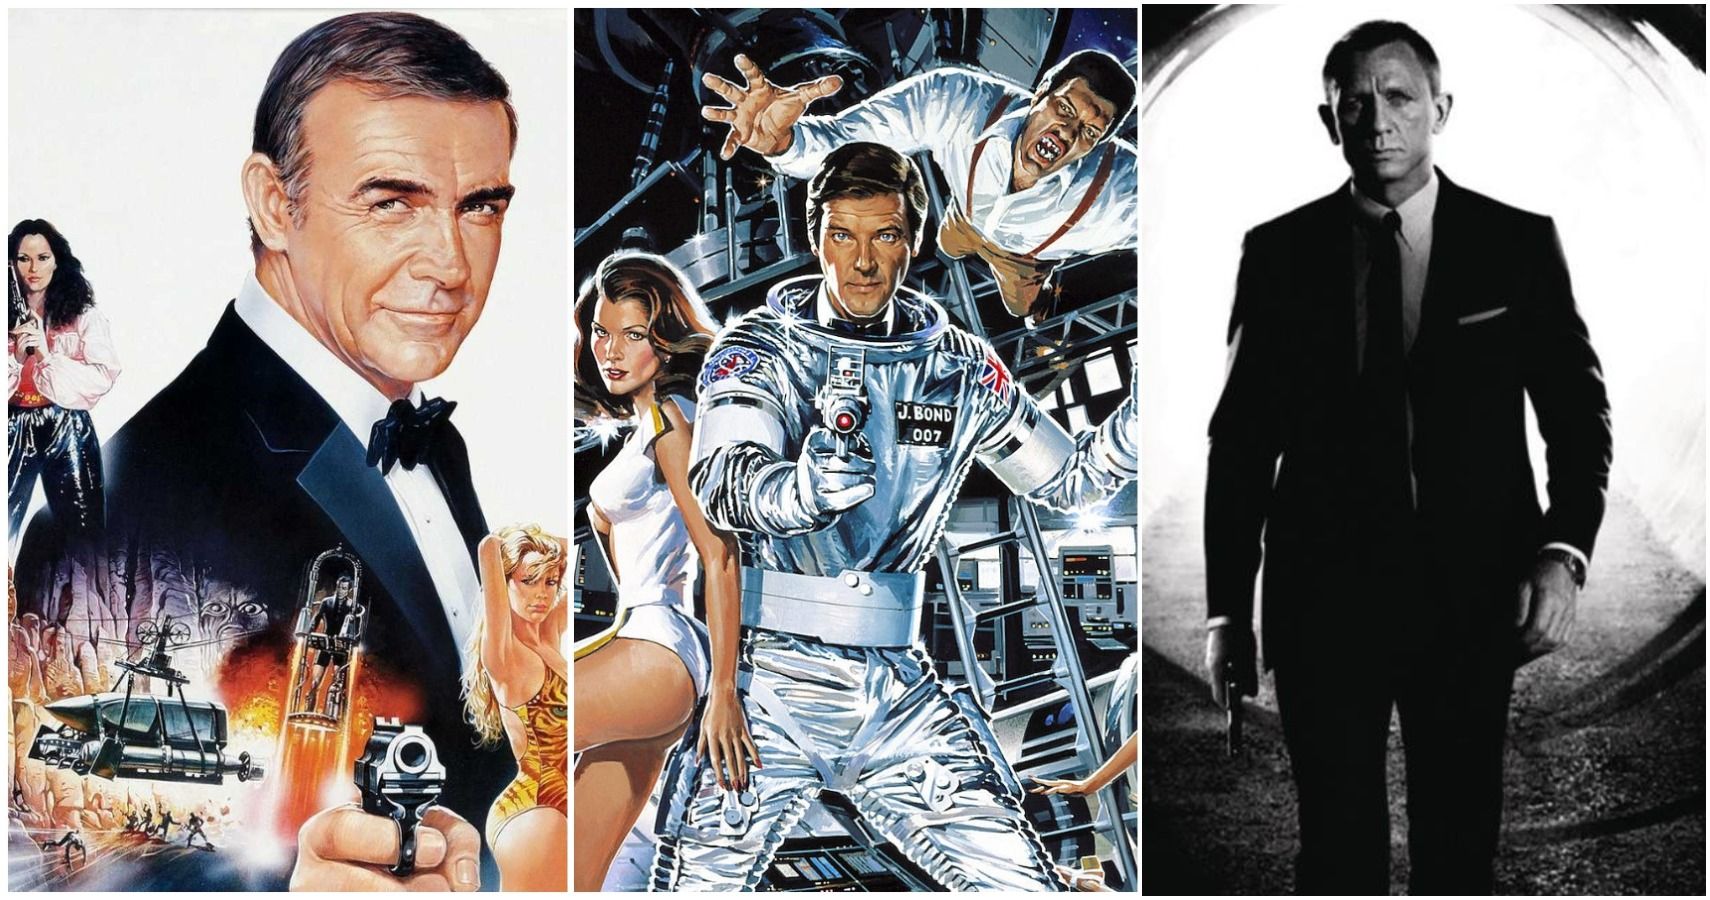 Top 10 James Bond Movies